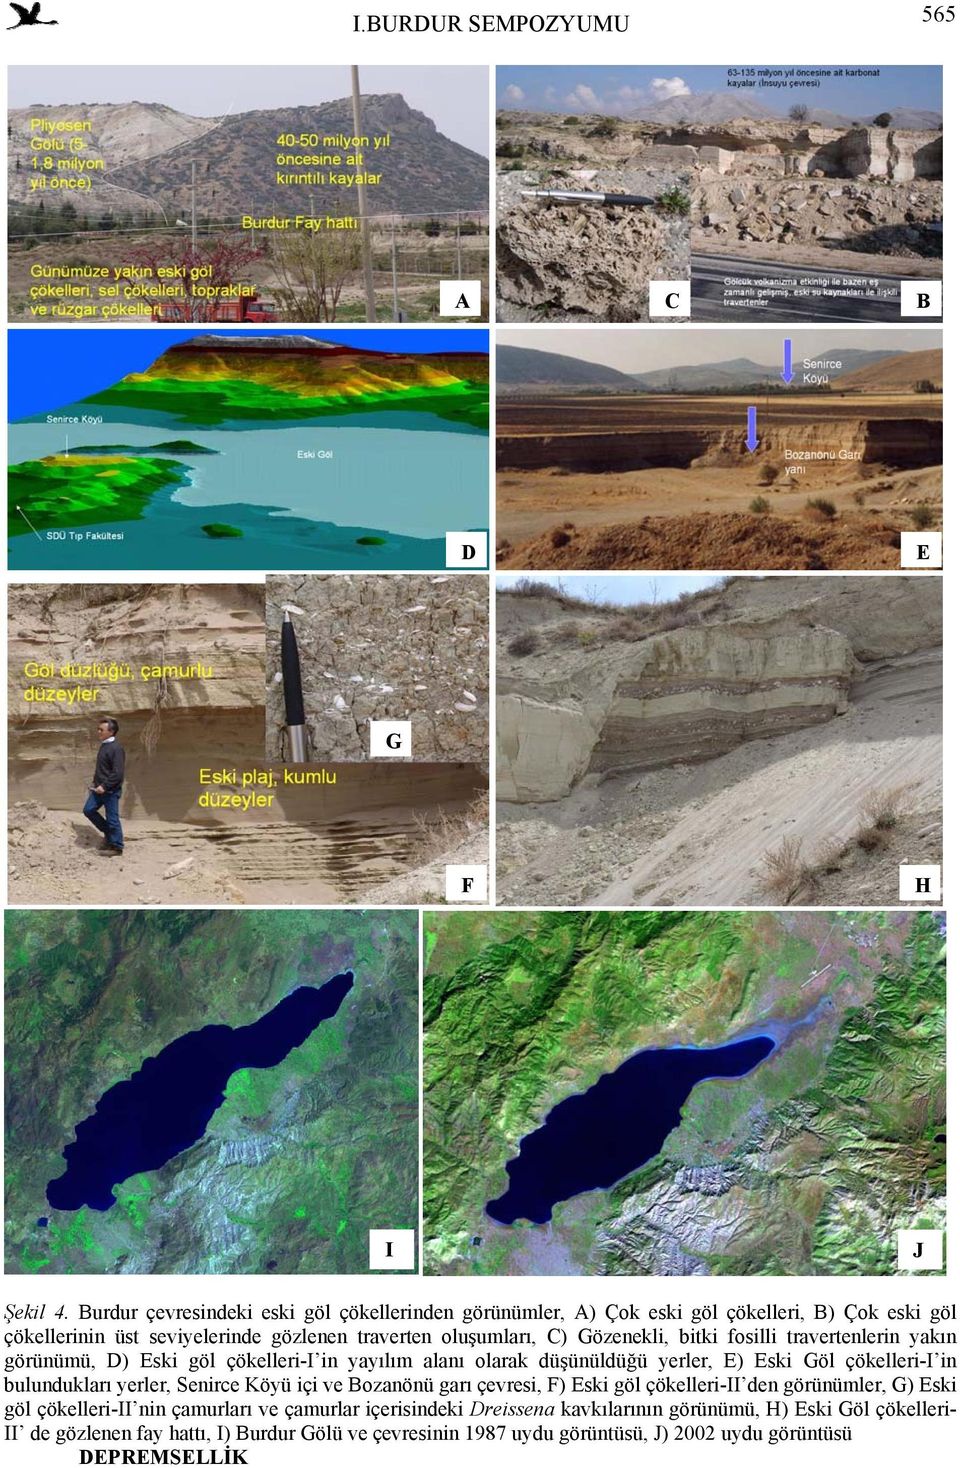 Gözenekli, bitki fosilli travertenlerin yakın görünümü, D) Eski göl çökelleri-i in yayılım alanı olarak düşünüldüğü yerler, E) Eski Göl çökelleri-i in bulundukları